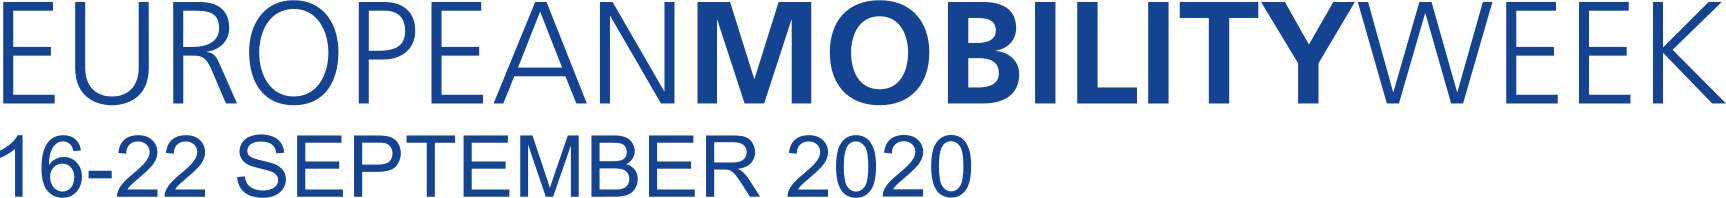 logo_european_mobilityweek_2020.png